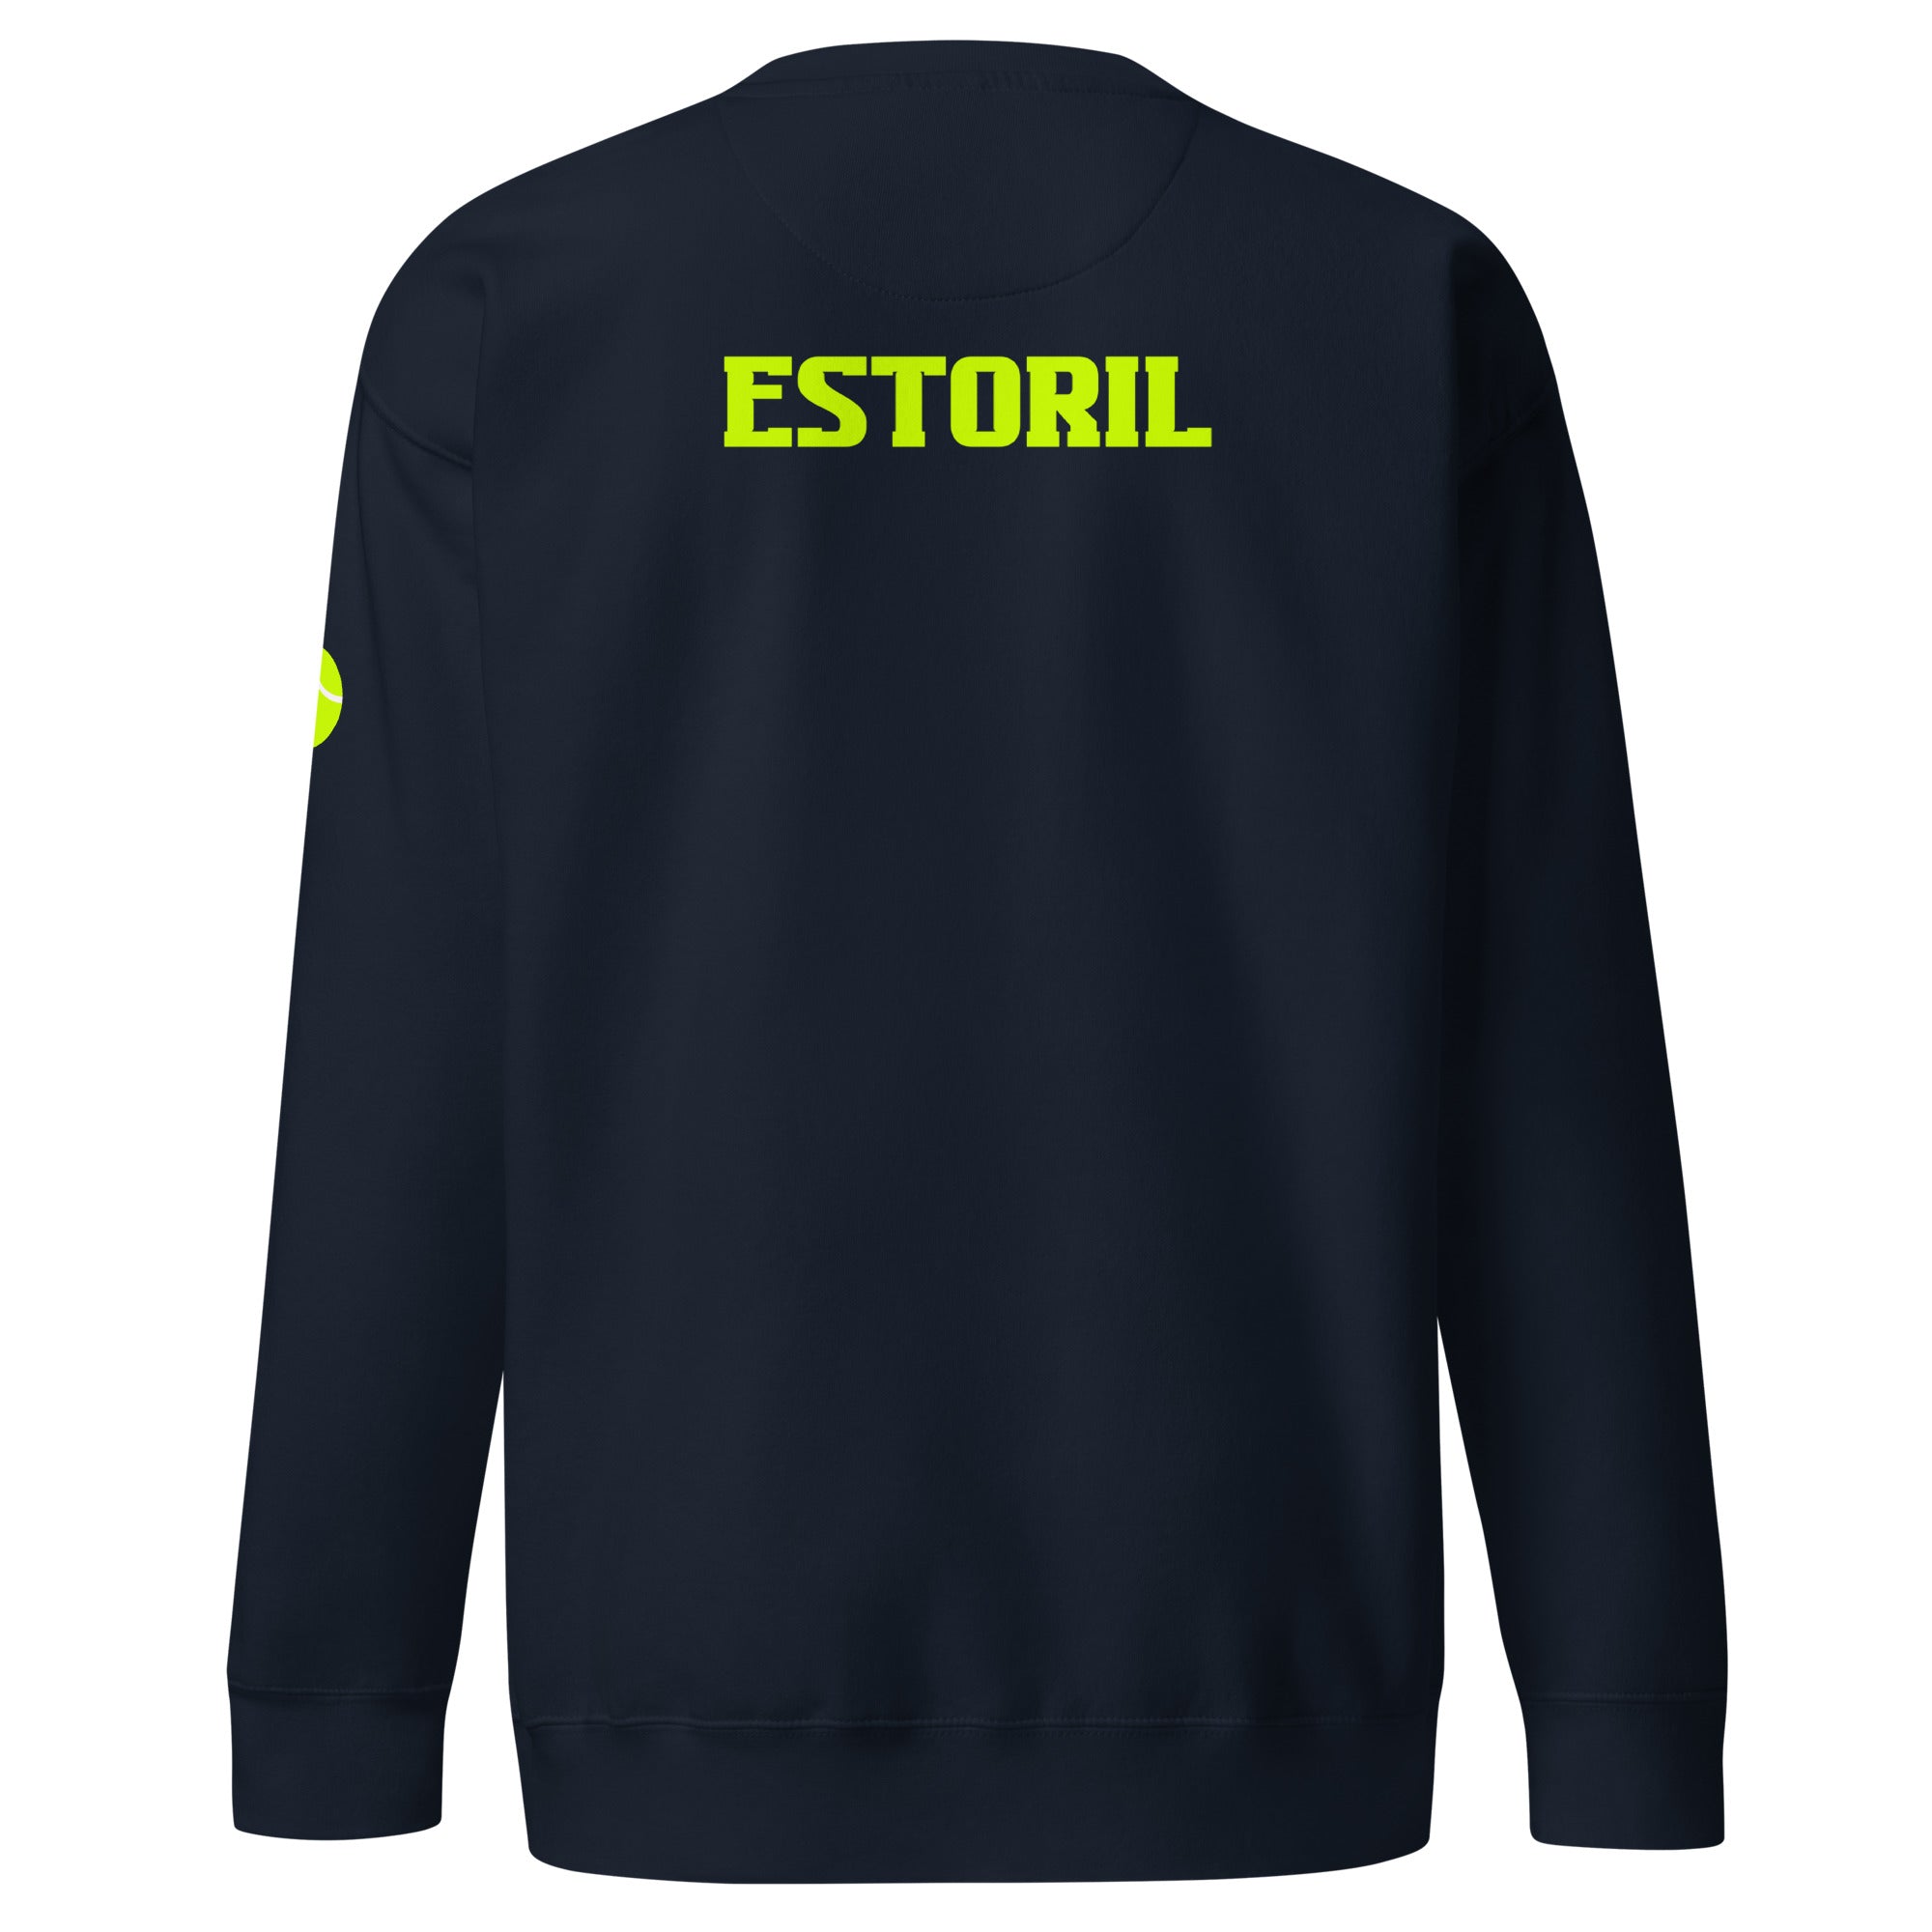 Unisex Premium Sweatshirt - Tennis Masters Estoril - GRAPHIC T-SHIRTS